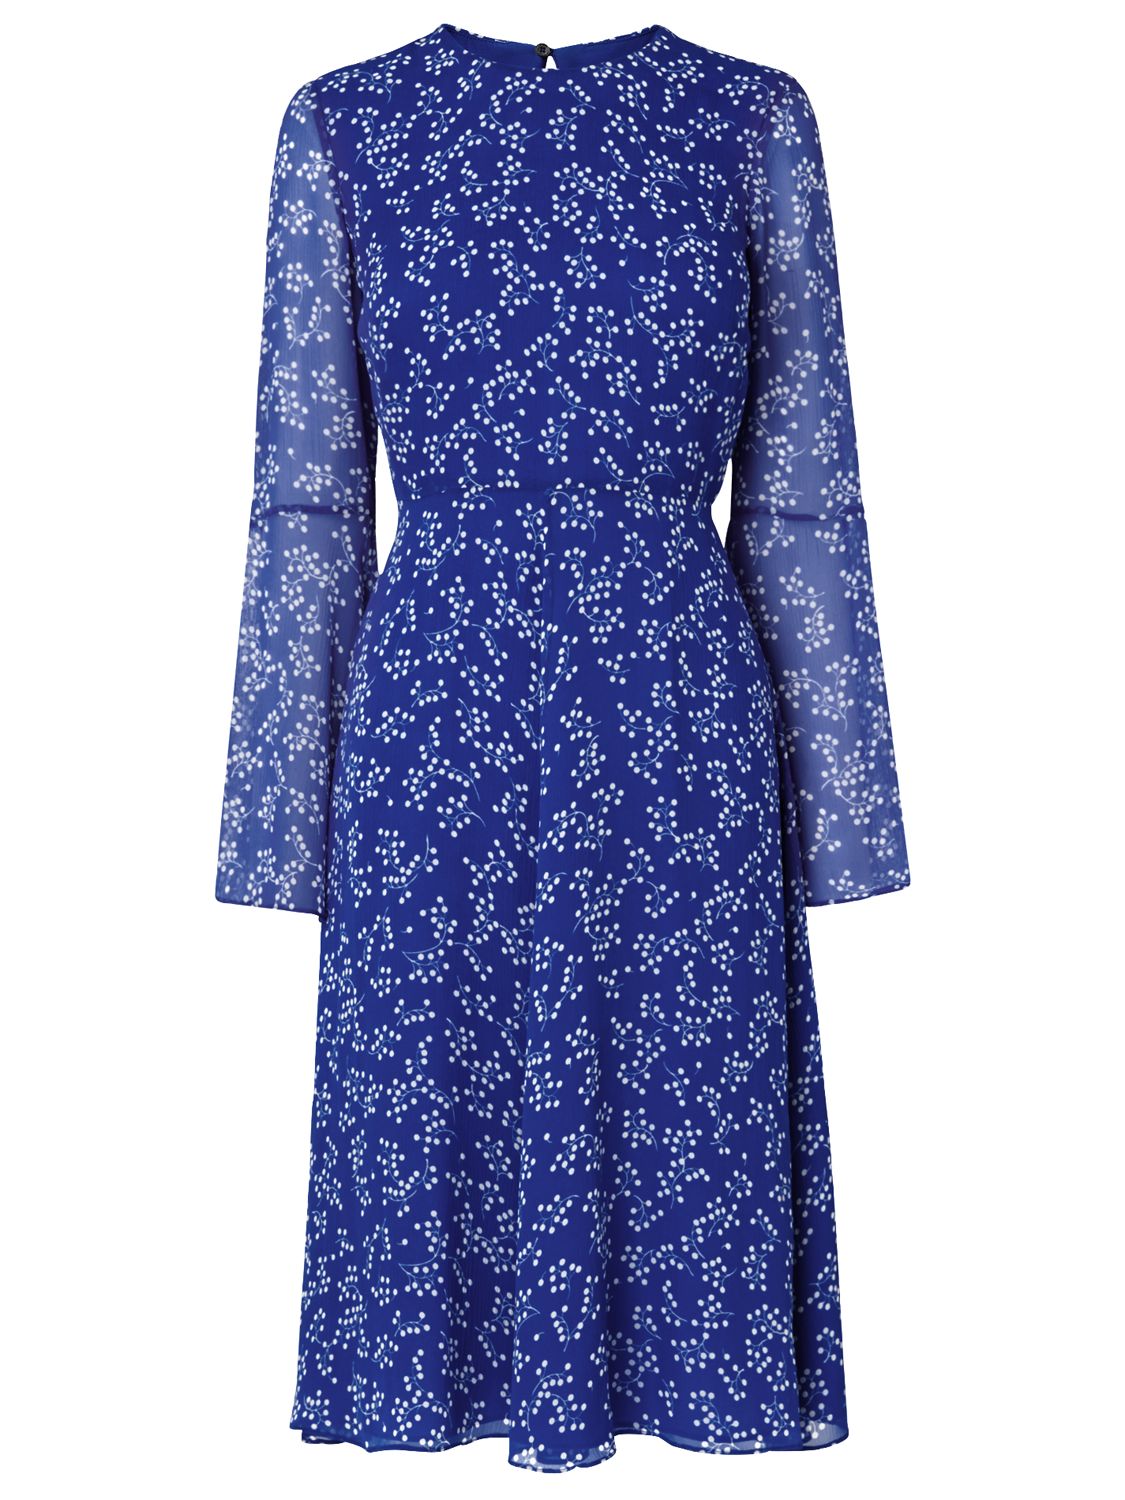 L.K. Bennett Cecily Silk Dress, Blue, 12